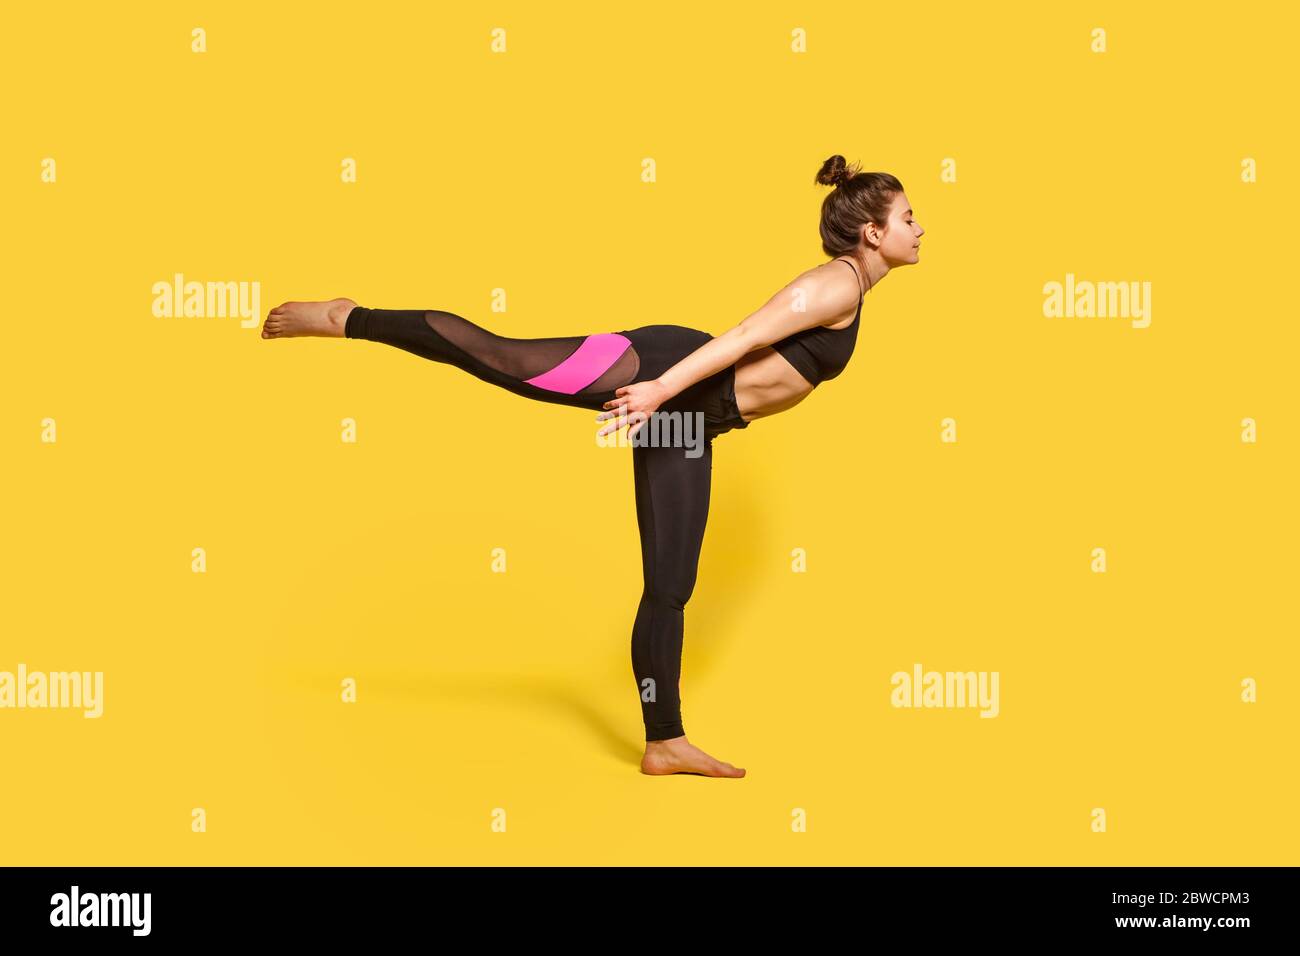 Guerriero 3 posa. Donna sottile con capelli bun in stretto abbigliamento sportivo praticando yoga, facendo Virabhadrasana III esercizio su una gamba, stretching muscoli e bal Foto Stock